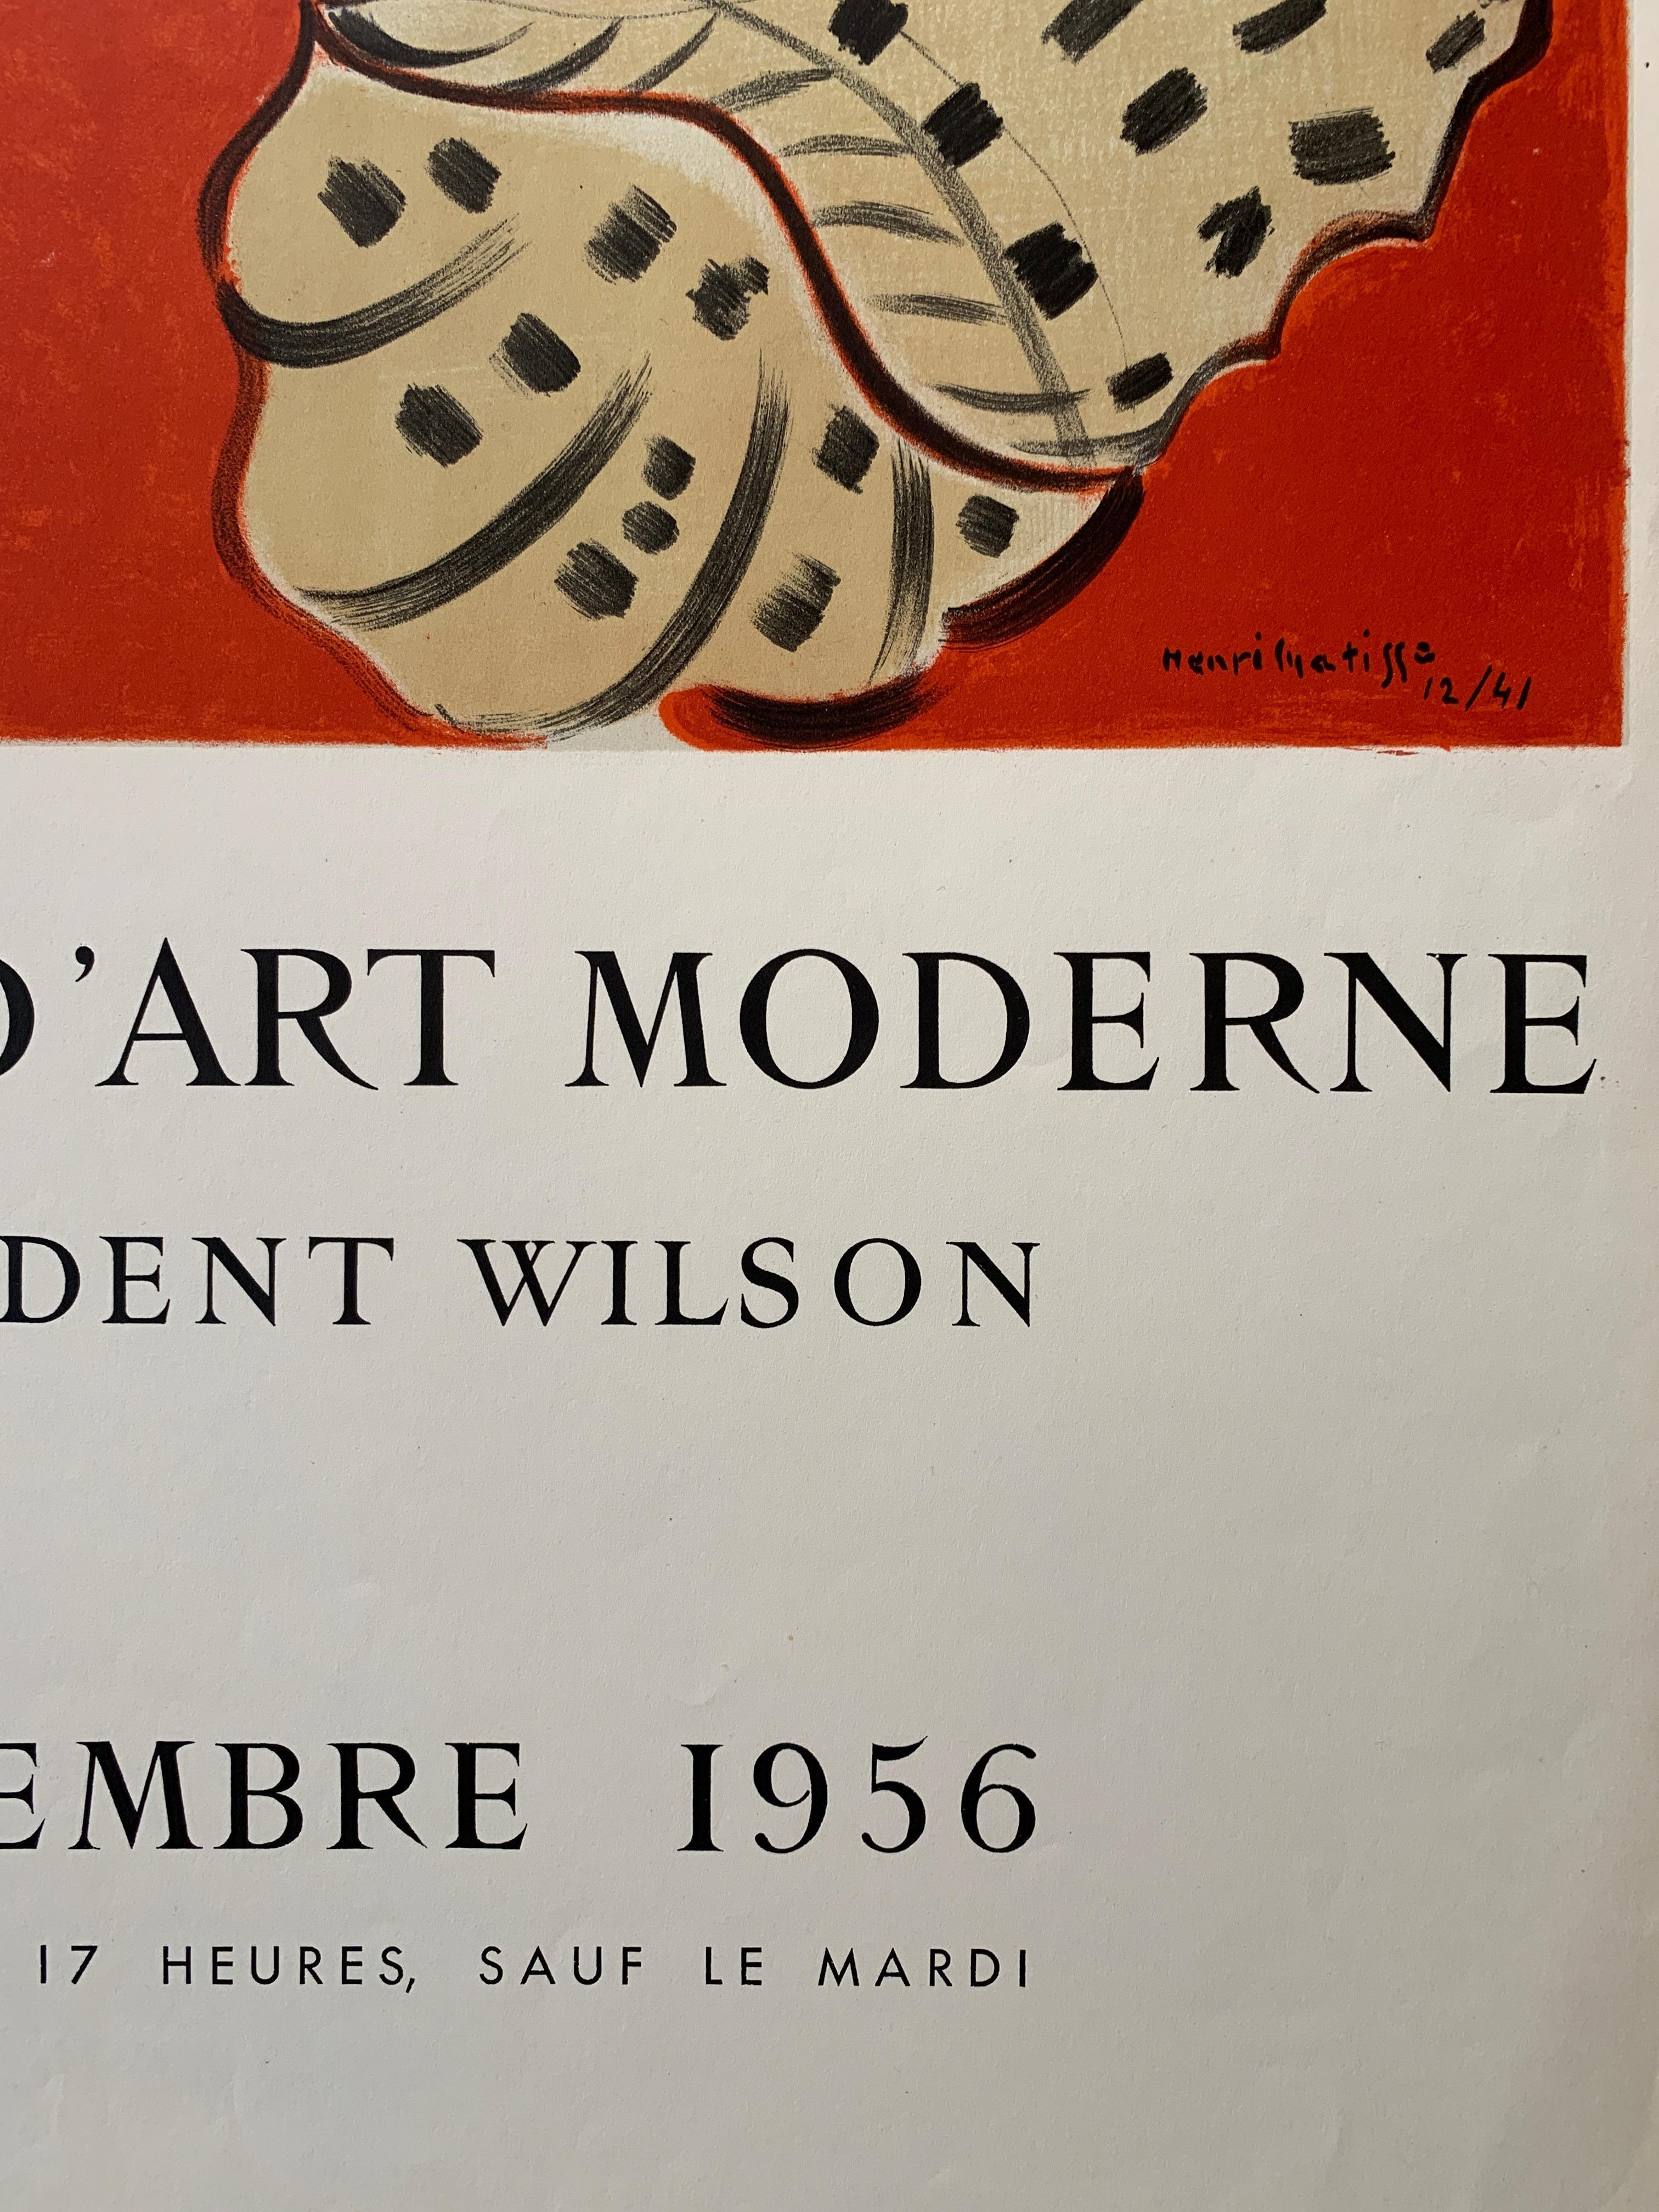 Henri Matisse, 'Musee National D’art Moderne' Original Exhibition Poster, 1956 For Sale 1